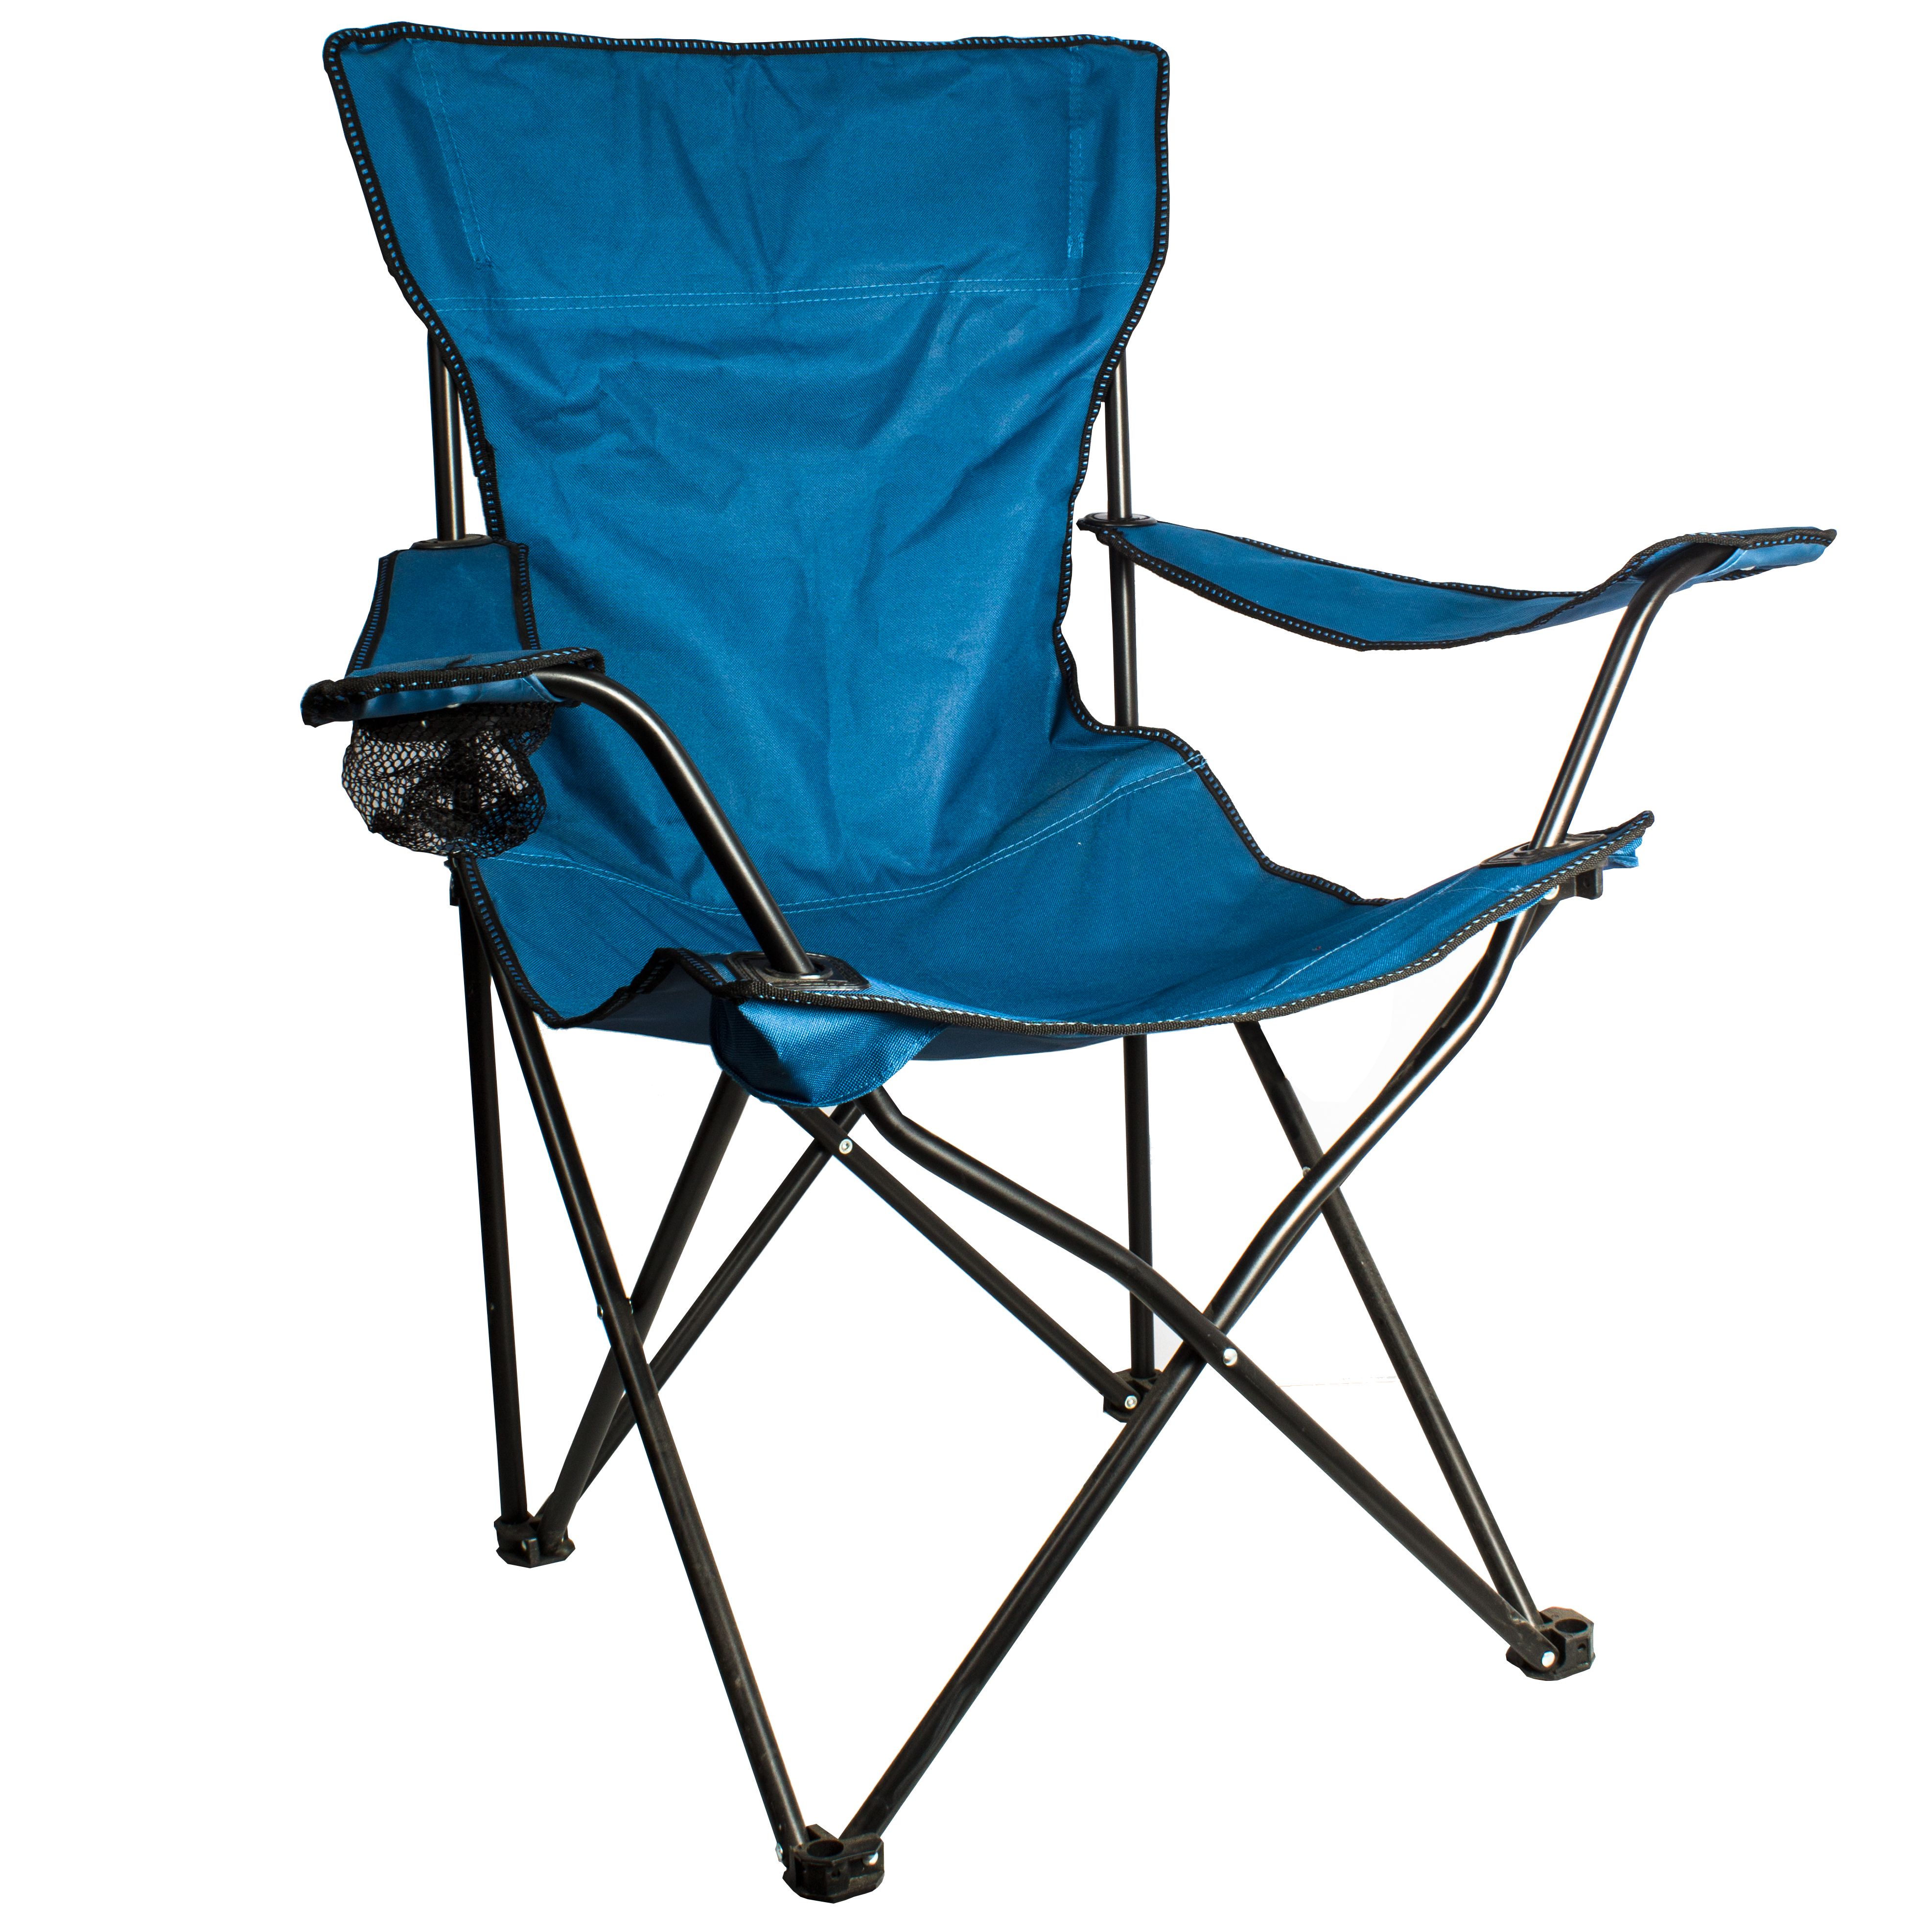 Кресло походное складное. Туристическое кресло Ремингтон. Кресло складное Ремингтон. White Fox кресло складное туристическое с подлокотниками #2021 60401. Кресло складное с подлокотниками CK-305, синий.